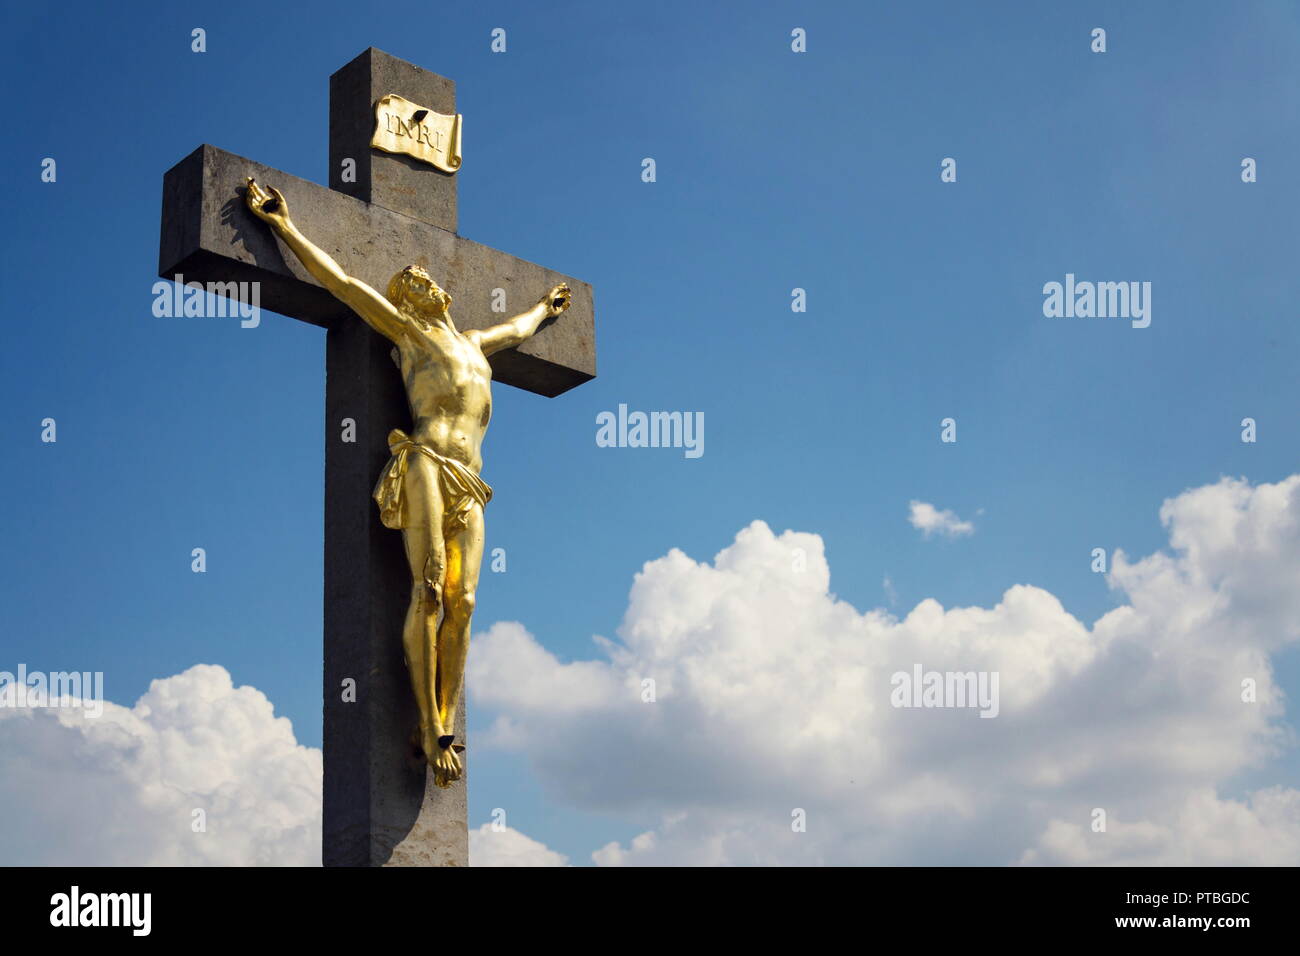 Golden Jésus Christ crucifixion statue, journée ensoleillée fond de ciel bleu, Vrbice, Moravie, République Tchèque Banque D'Images